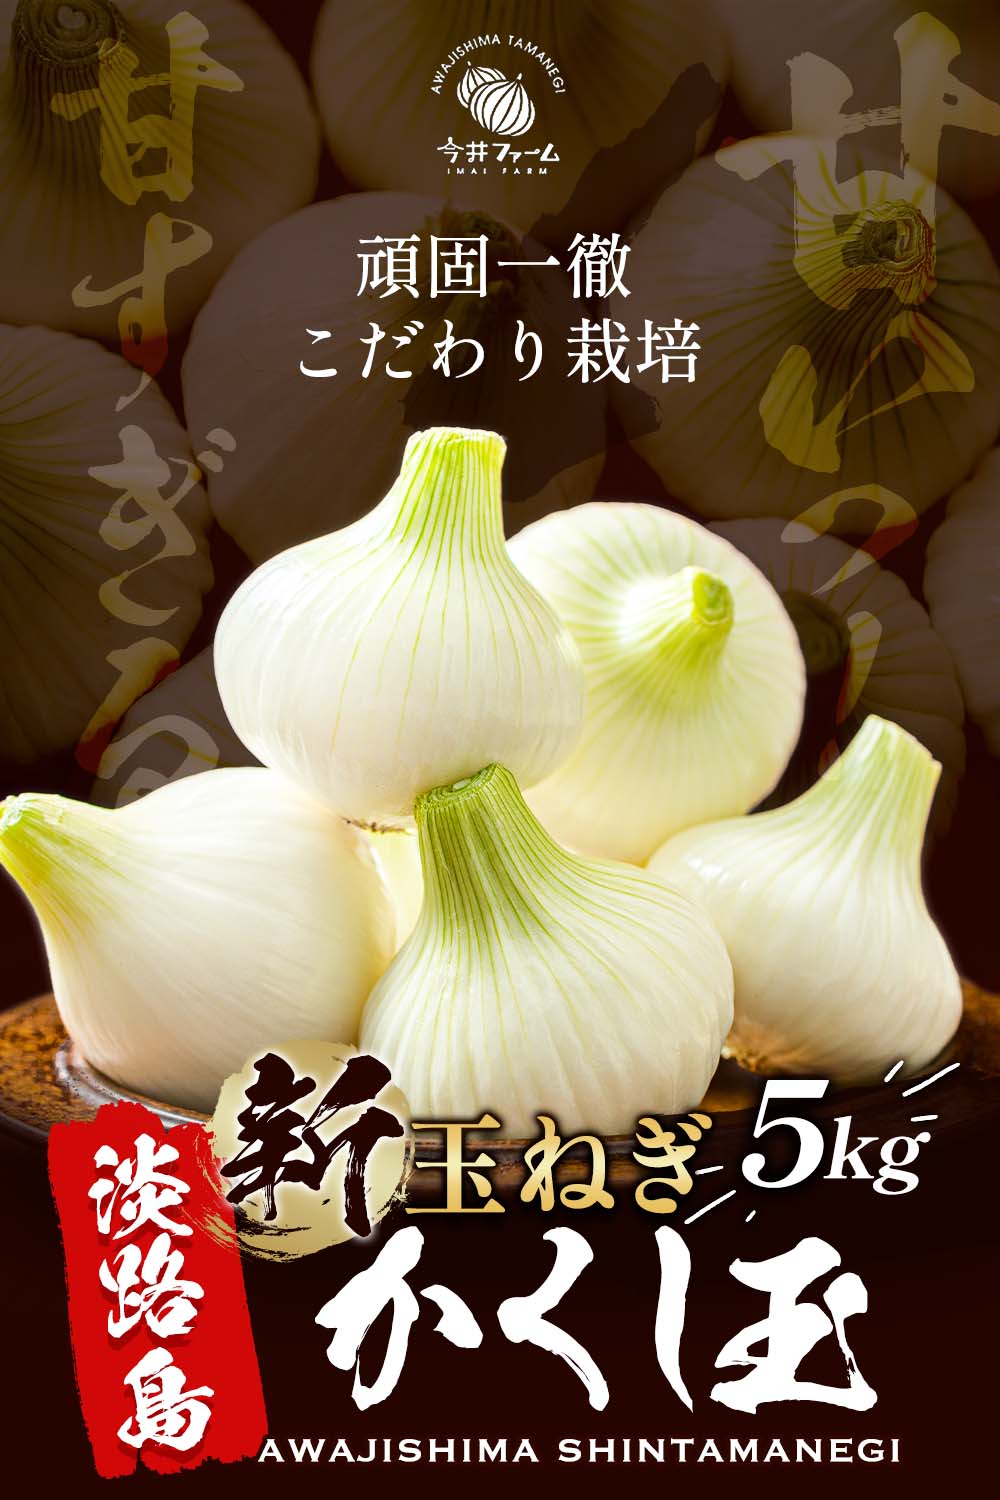  new onion Awaji Island with translation onion 5kg. comb sphere sphere leek onion new onion new sphere leek new sphere now . farm #. comb sphere with translation 5K#